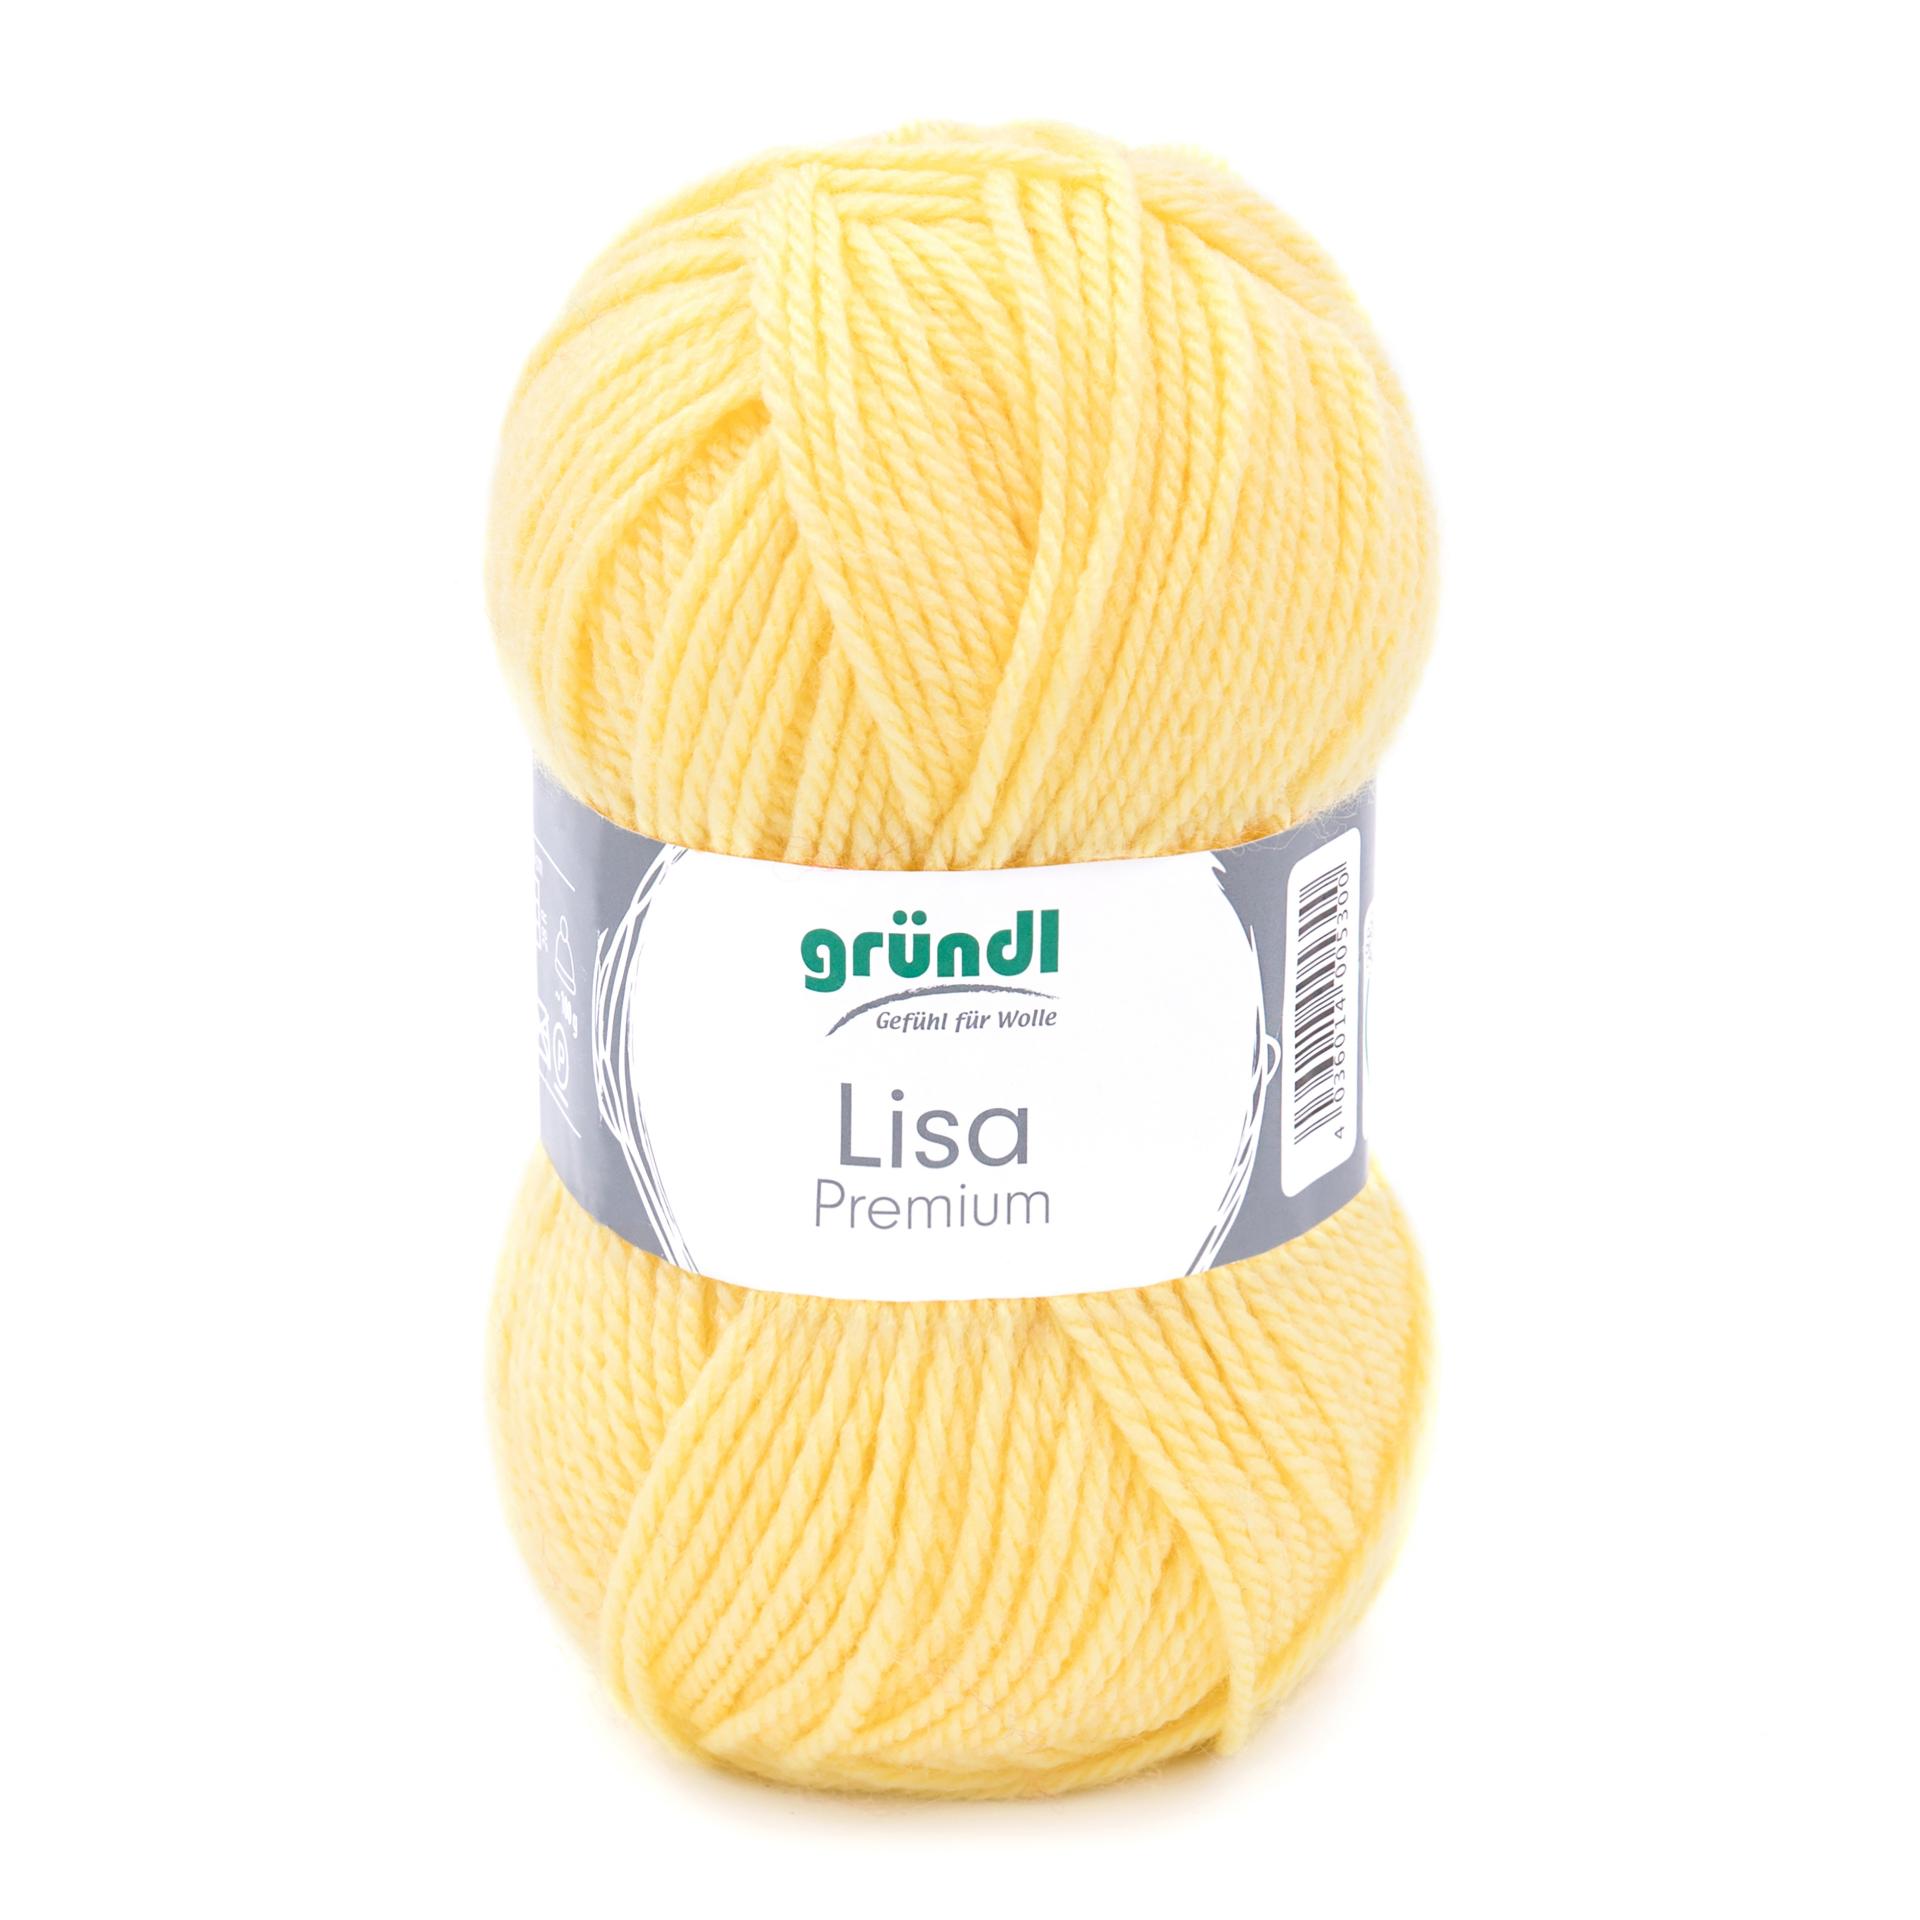 Lisa Premium einfärbig, Schulbastelwolle Bastelwolle, 50 g/133m